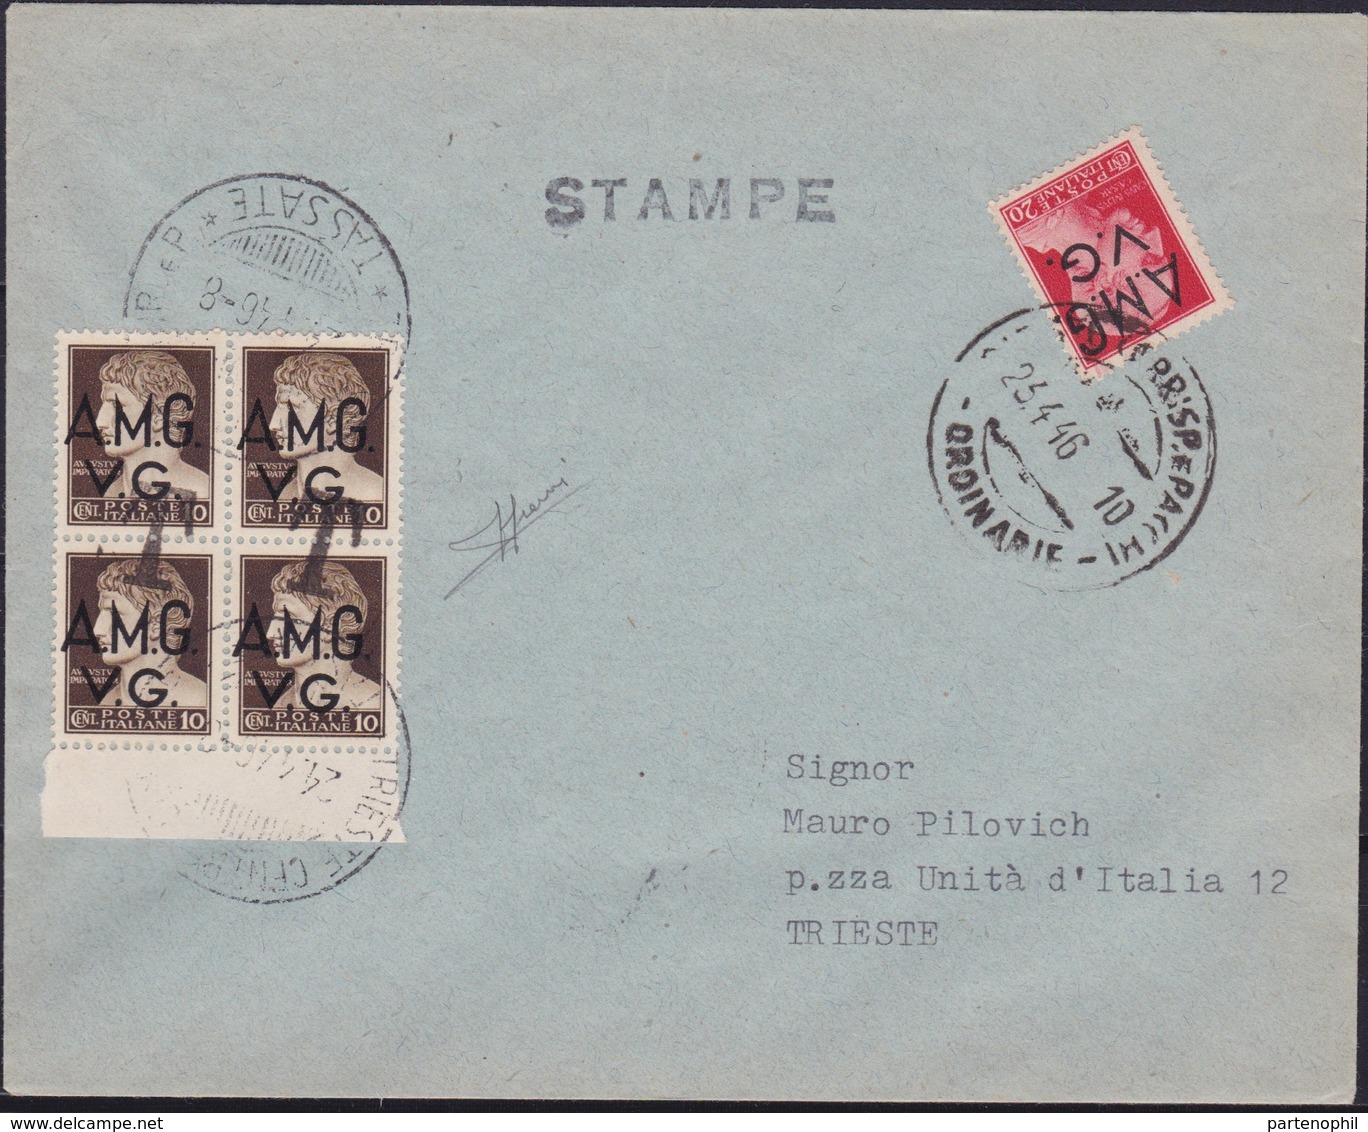 Venezia Giulia - 347 * Lettera Per Stampe Da Trieste Del 23.4.46 Per Città, Affrancata Con Imperiale Soprastampati A.M.G - Marcophilia